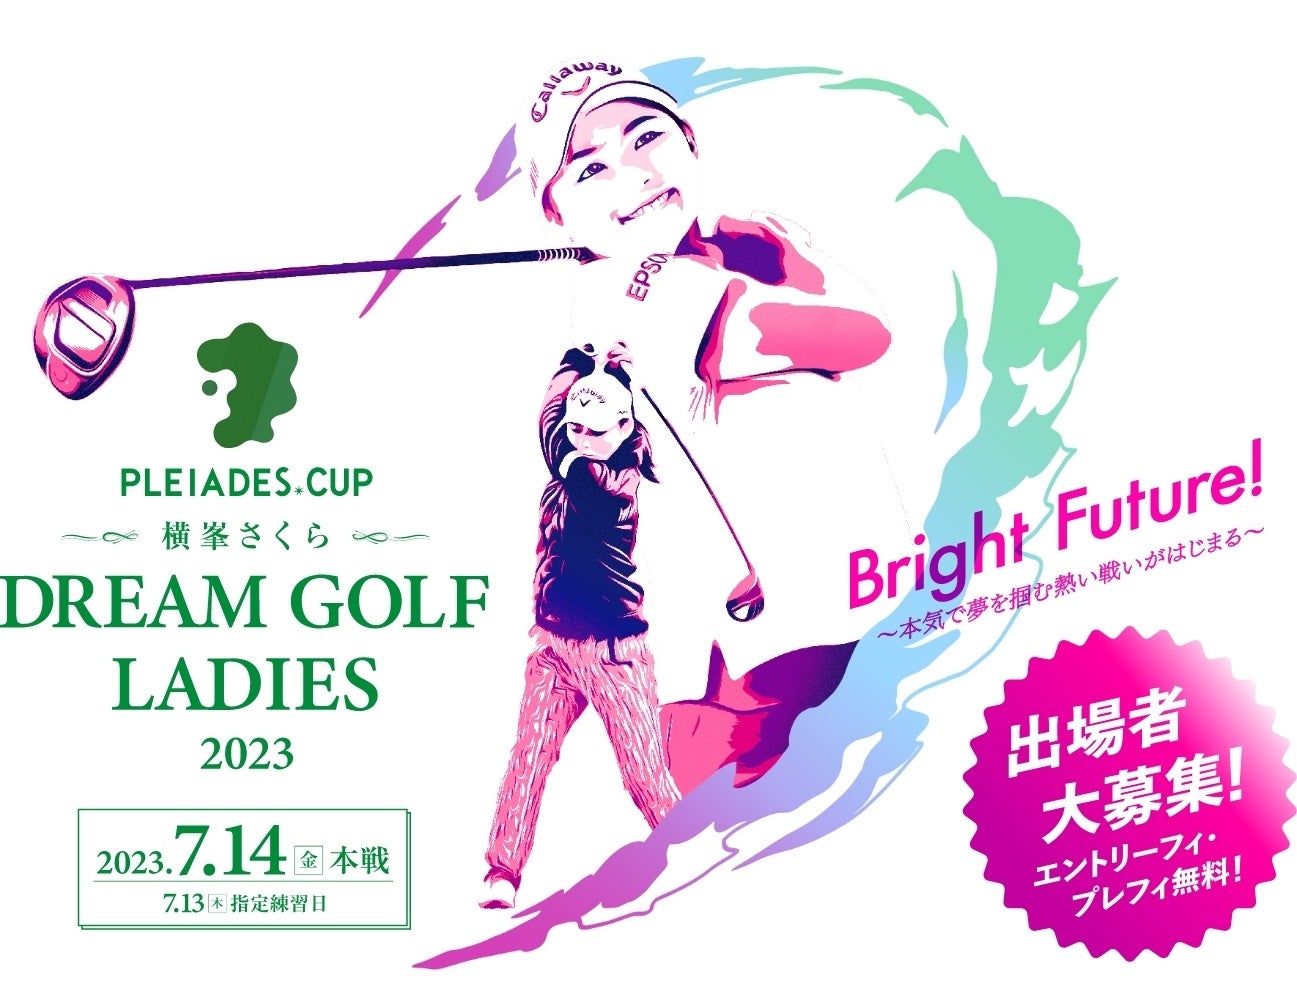 アットゴルフ浜松、新規会員様・既存会員様対象の
「ハーフアニバーサリーキャンペーン」を5月10日から開催